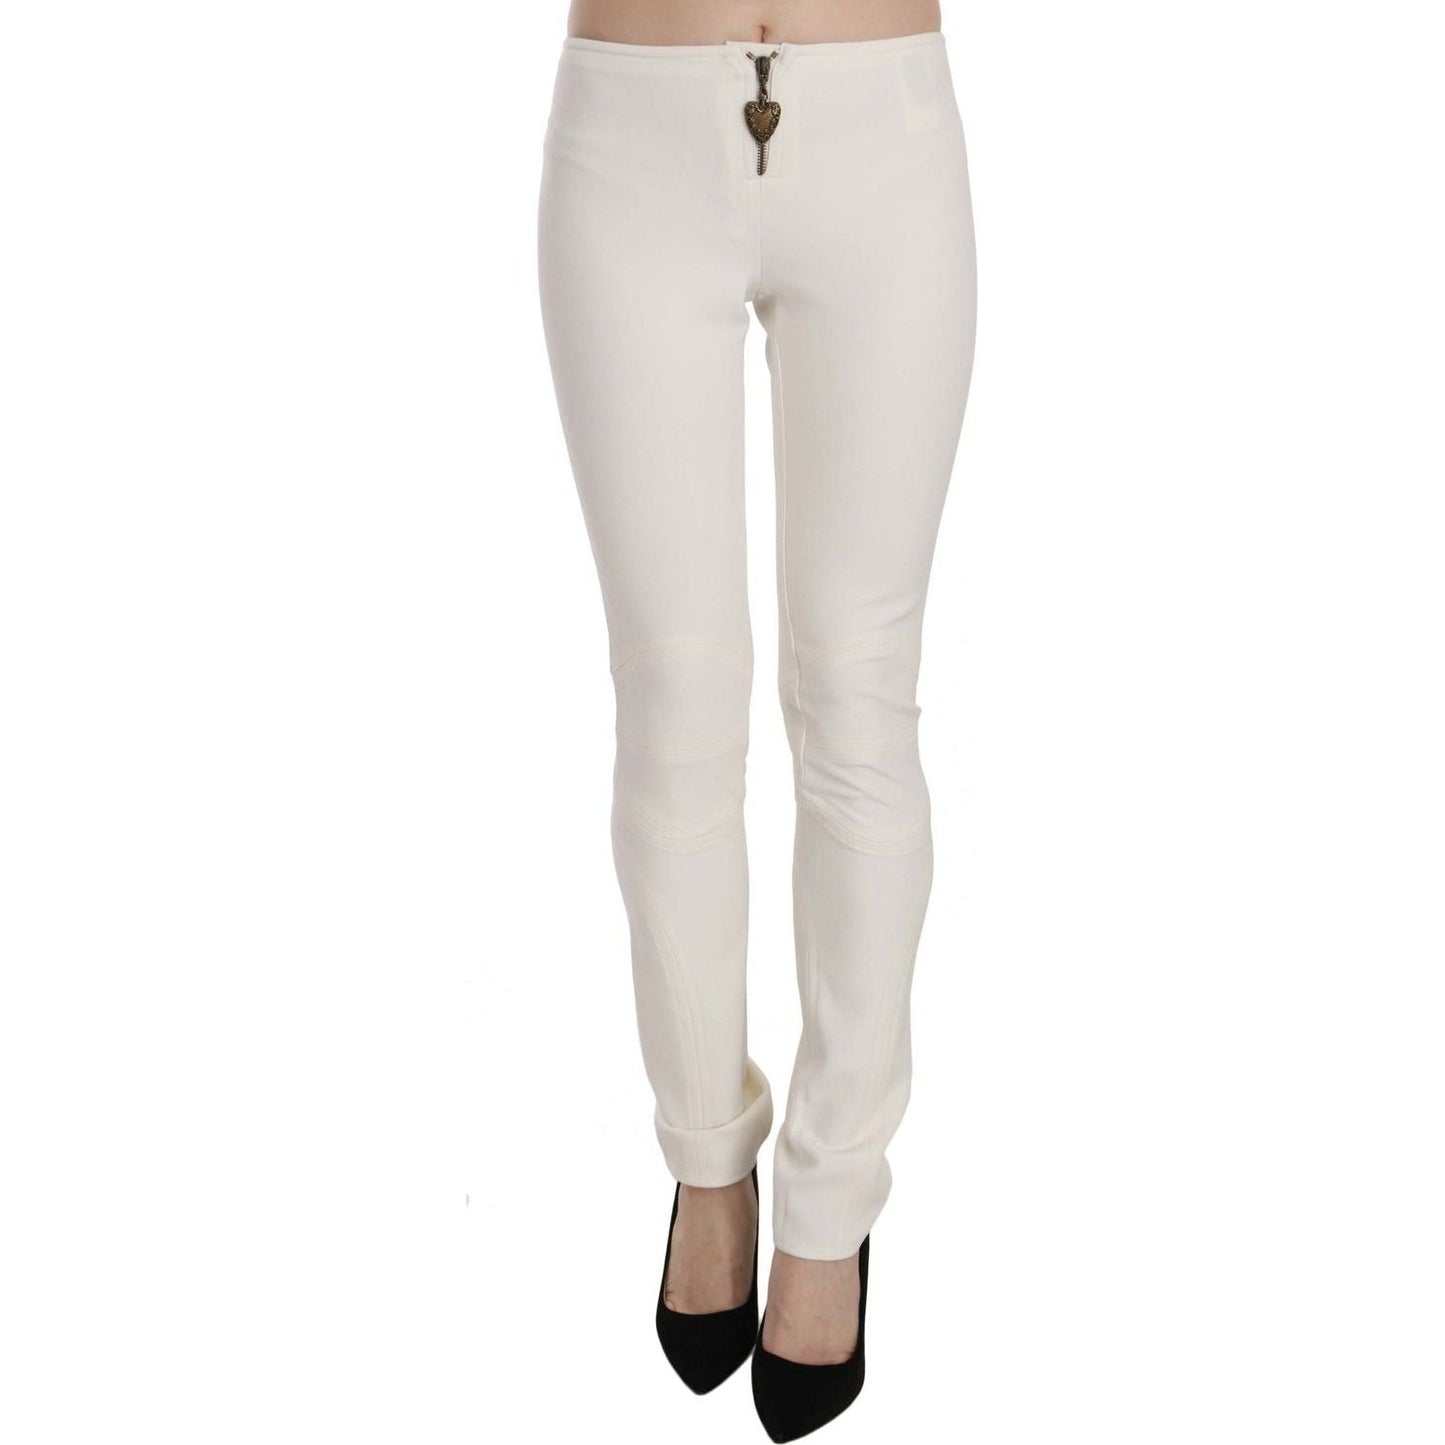 Just Cavalli Elegant Mid Waist Skinny Dress Pants white-mid-waist-skinny-dress-trousers-pants